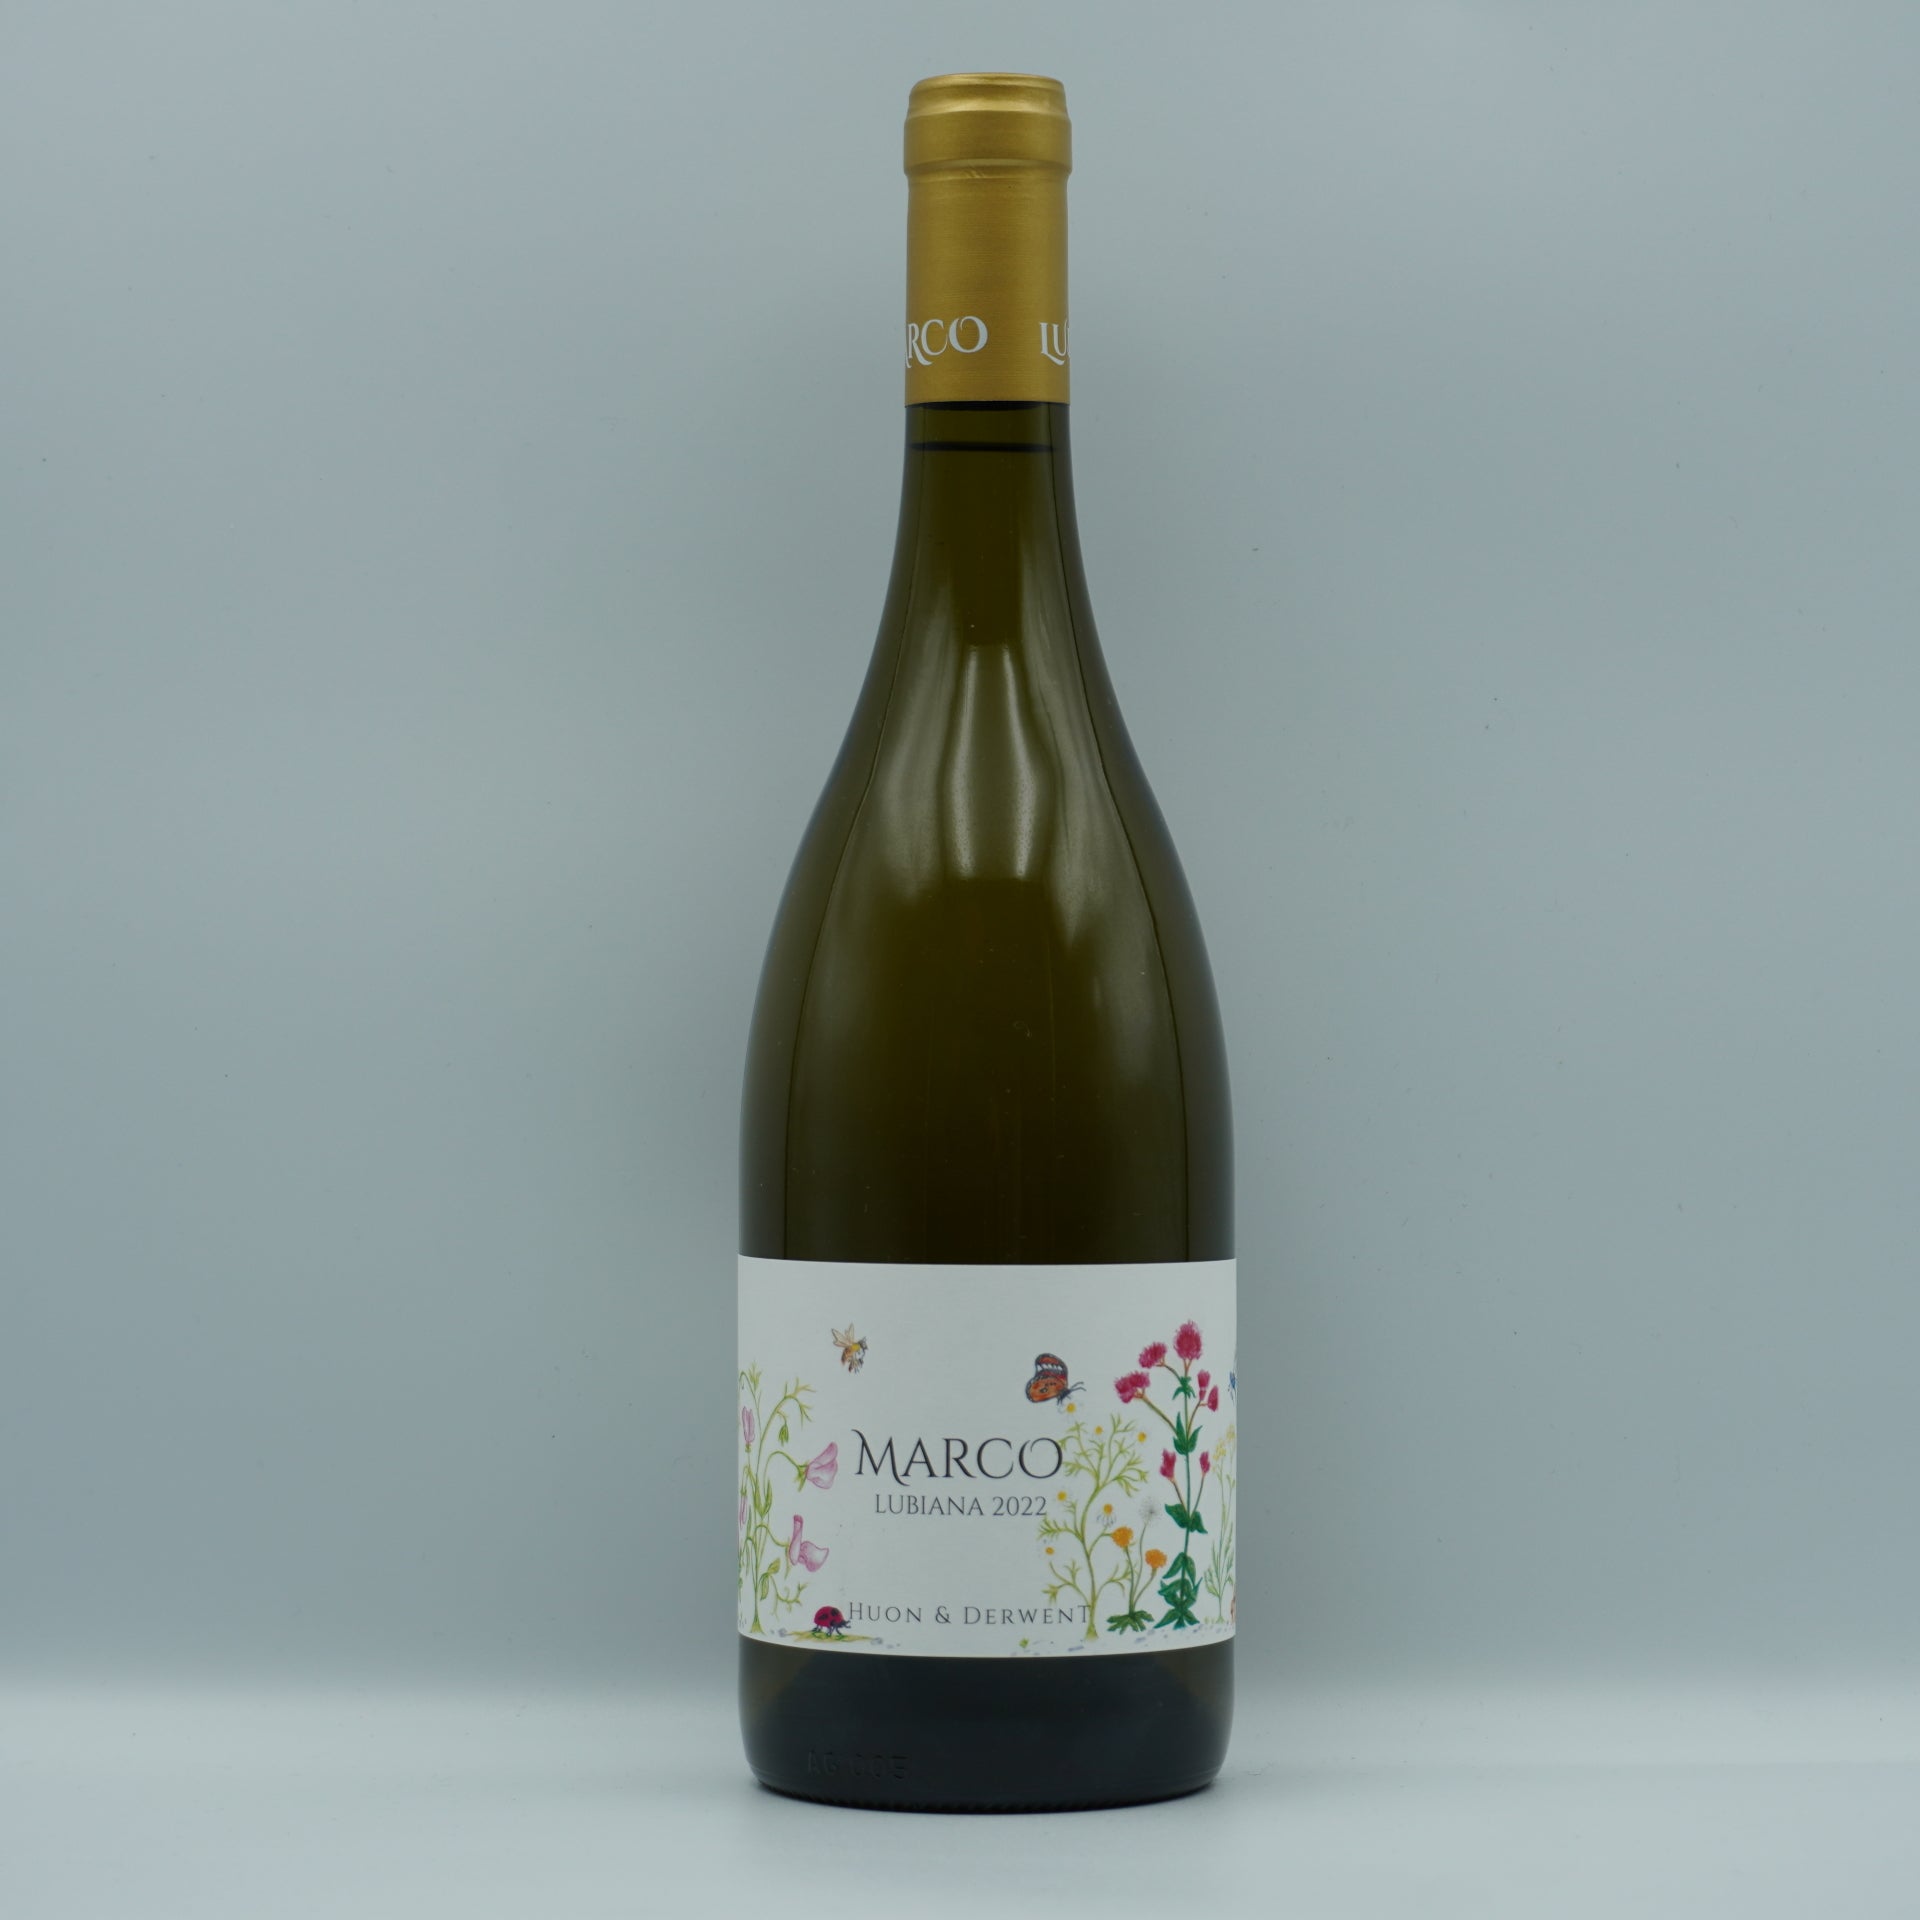 Marco Lubiana, Chardonnay 2022